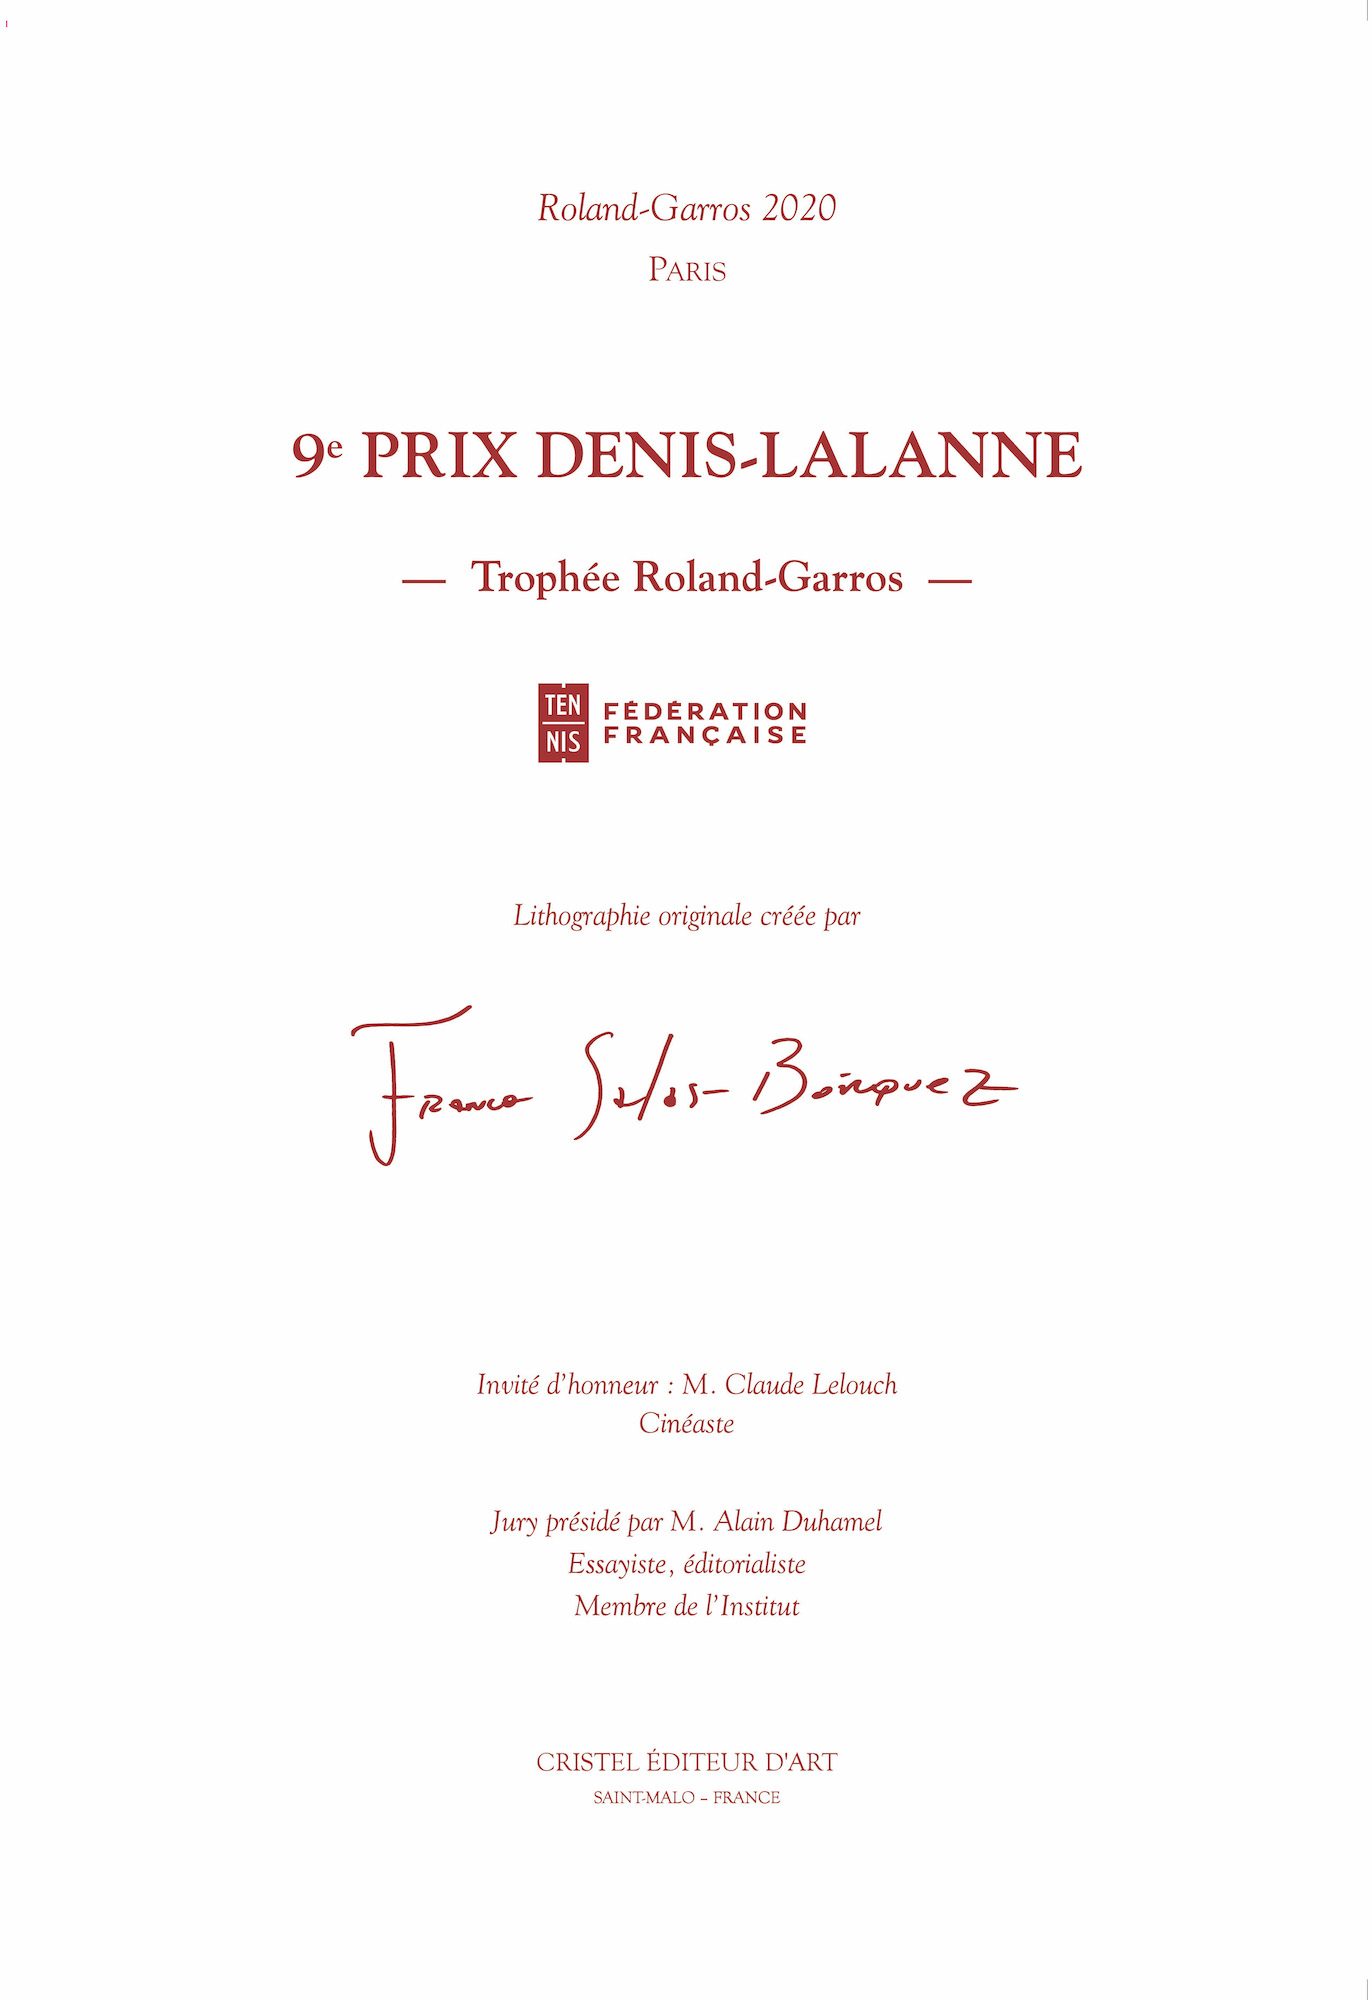 Portfolio du 9e Prix Denis-Lalanne Trophée Roland-Garros par Franco Salas Borquez